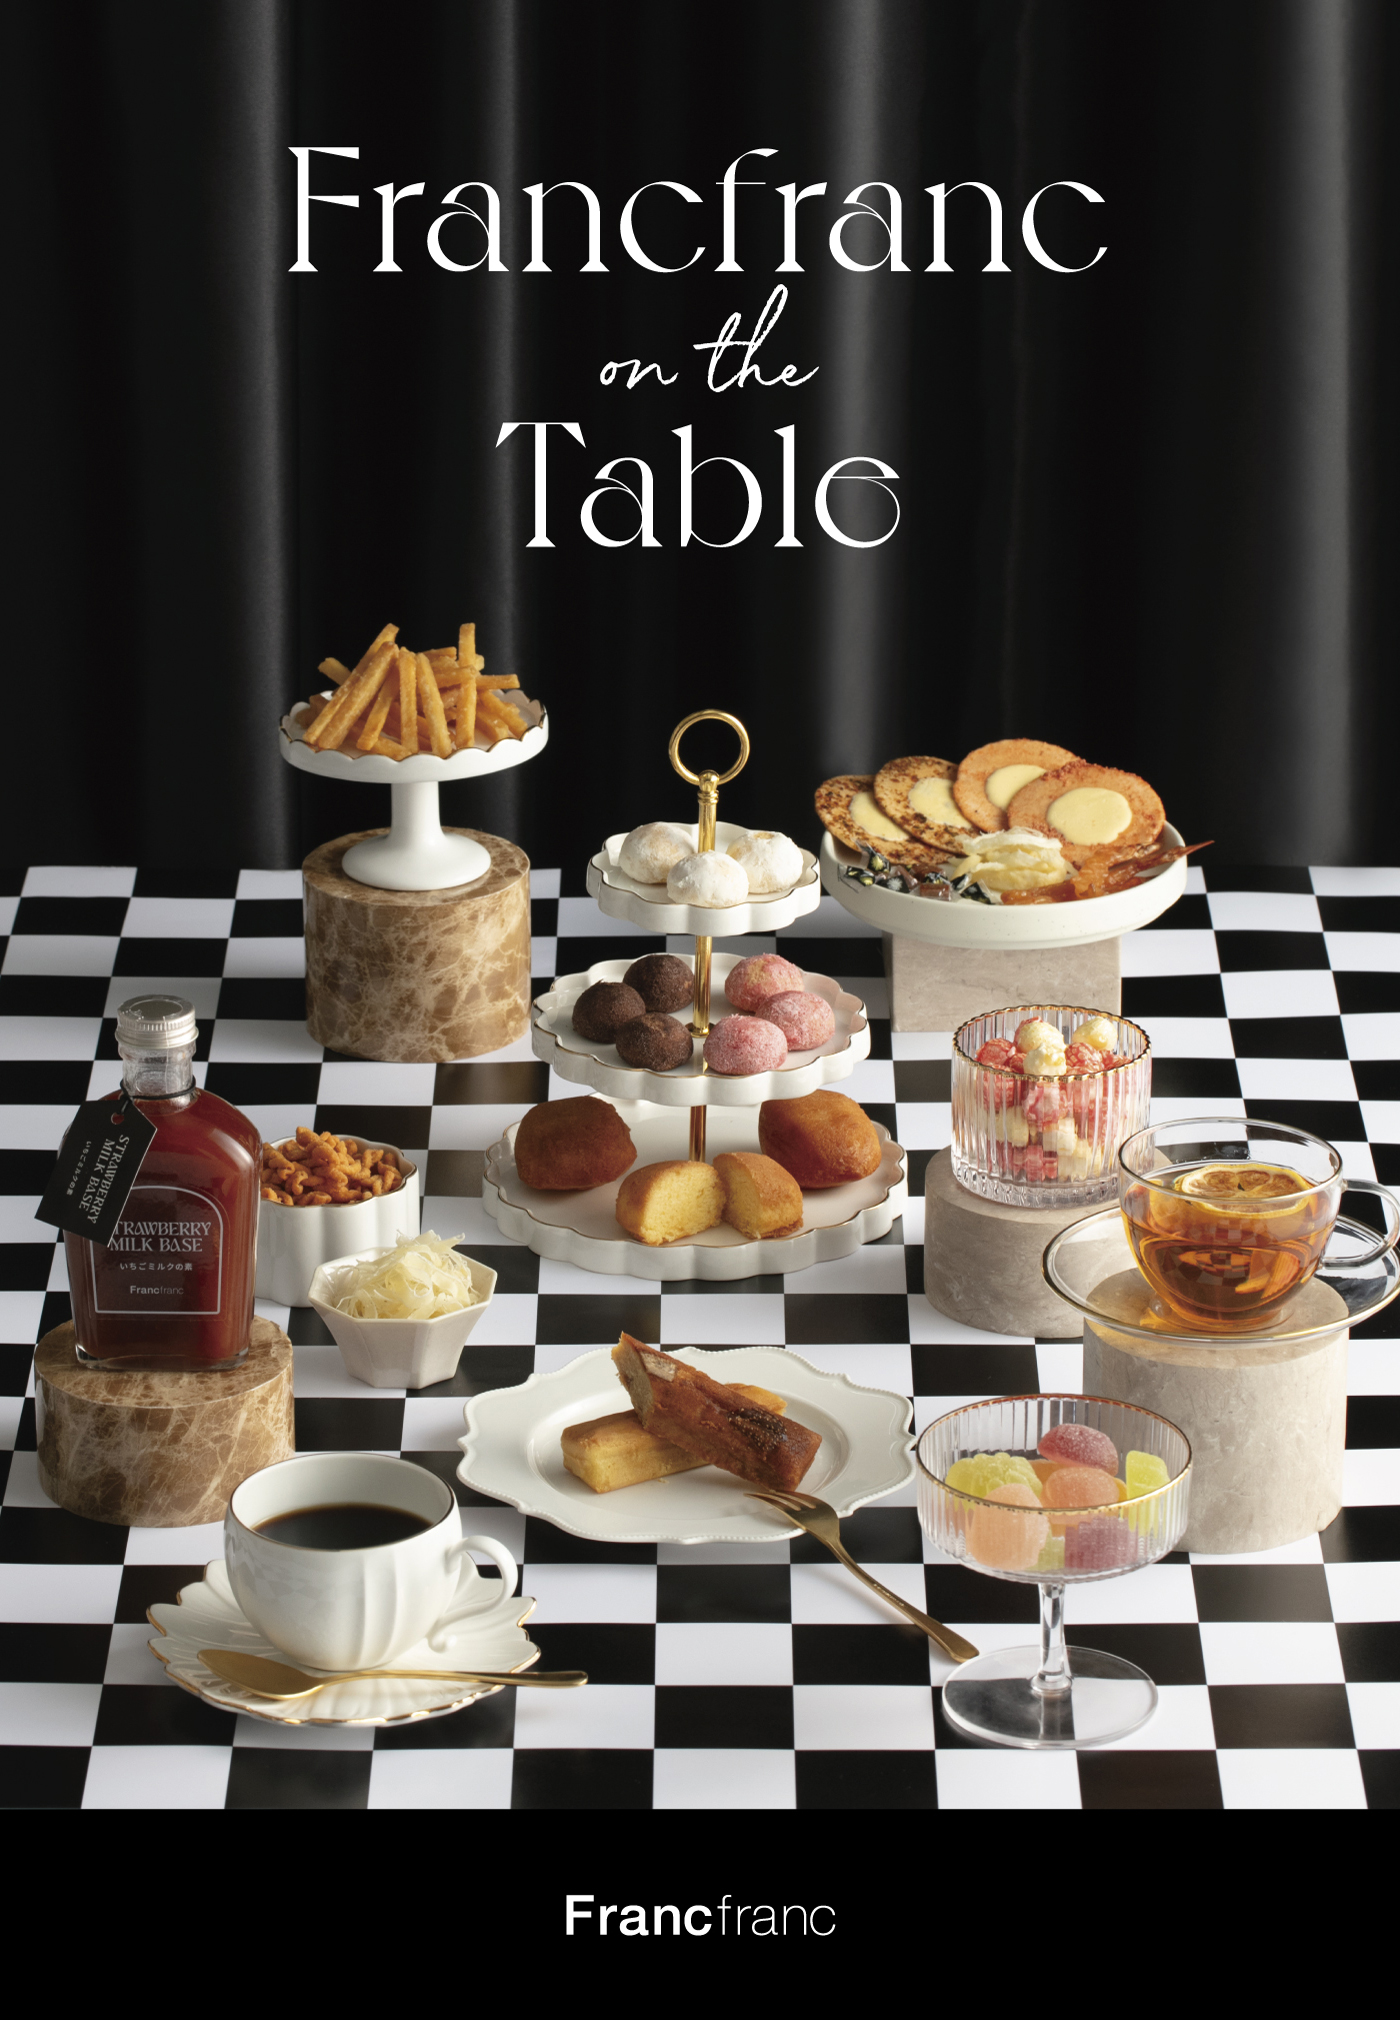 フランフランの食品シリーズ「Francfranc on the Table」イメージ